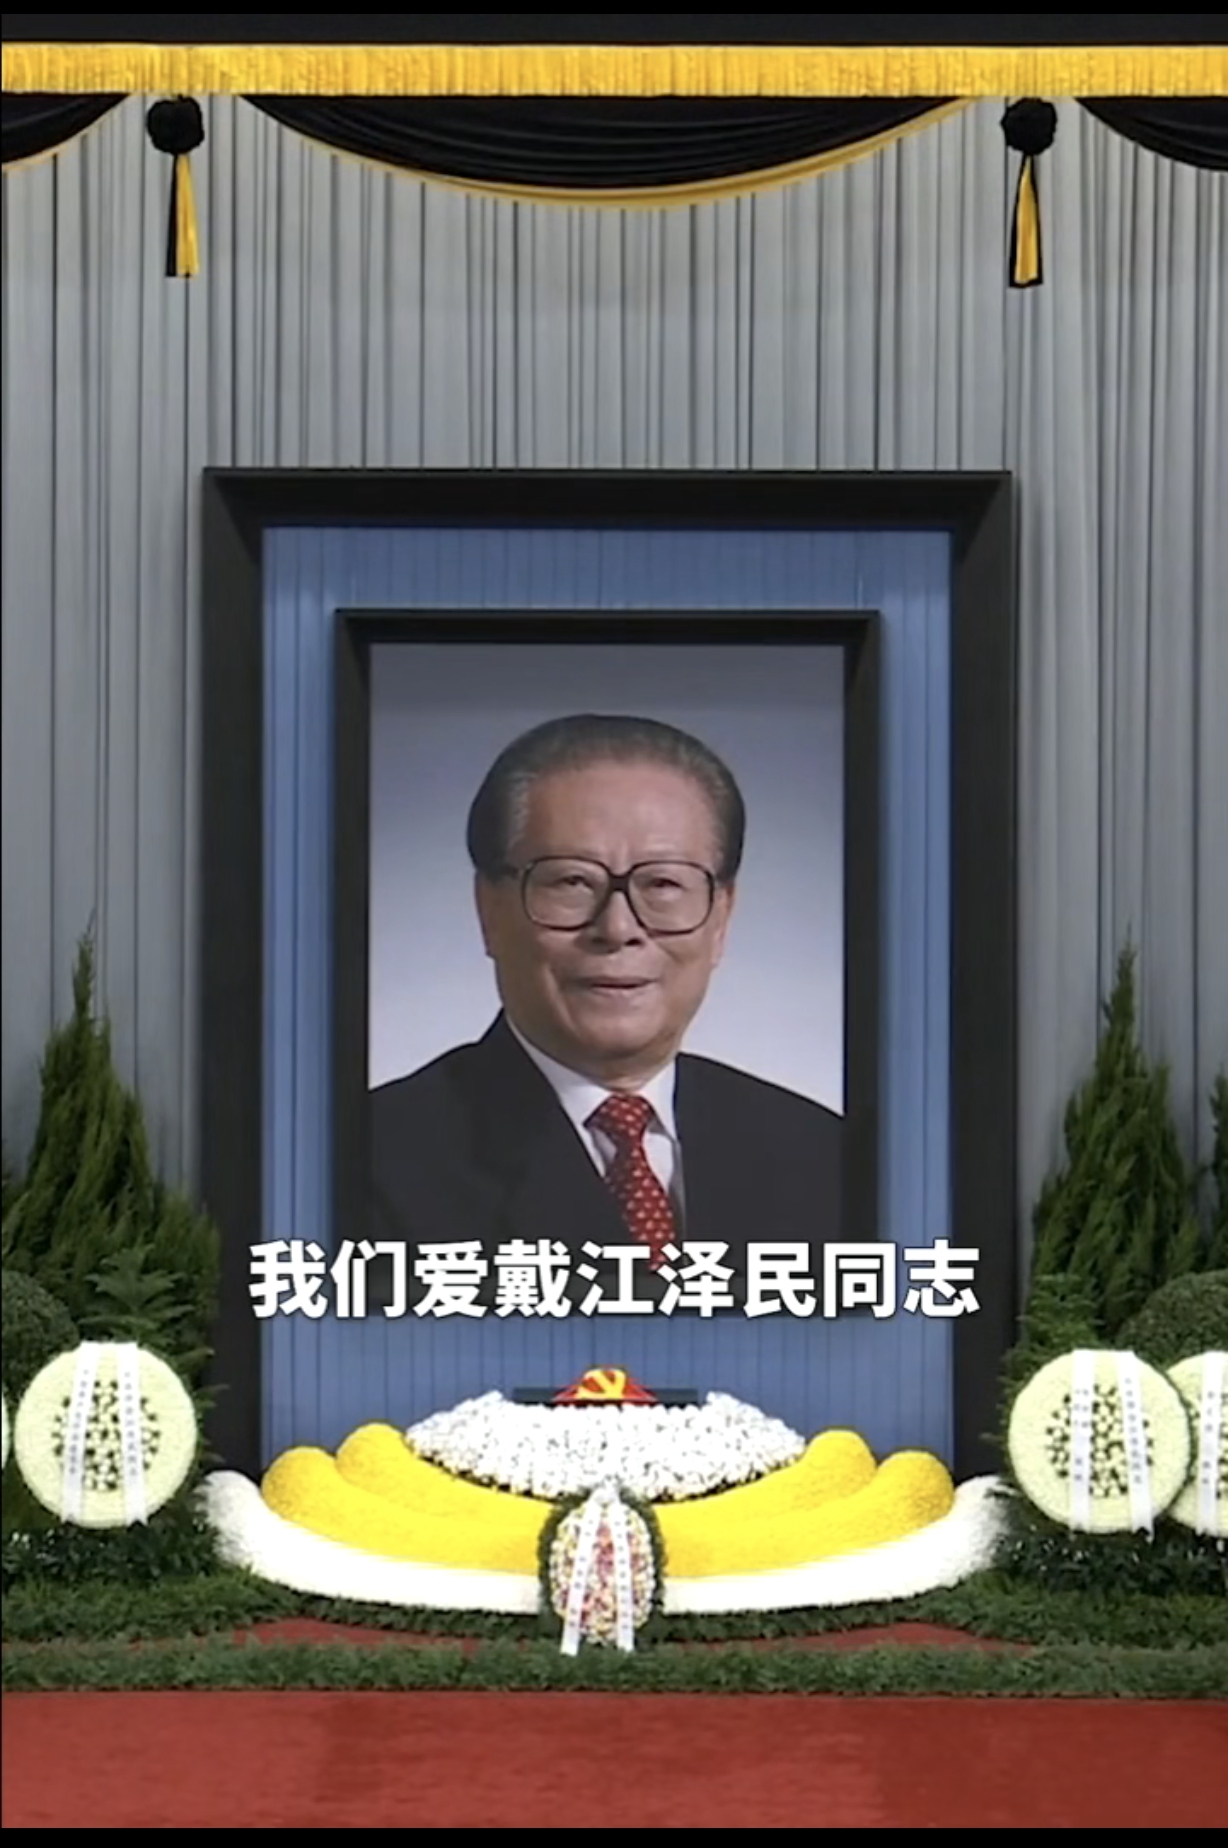 泰国中华文化促进会主席颇钦·蓬拉军博士吊唁江泽民同志